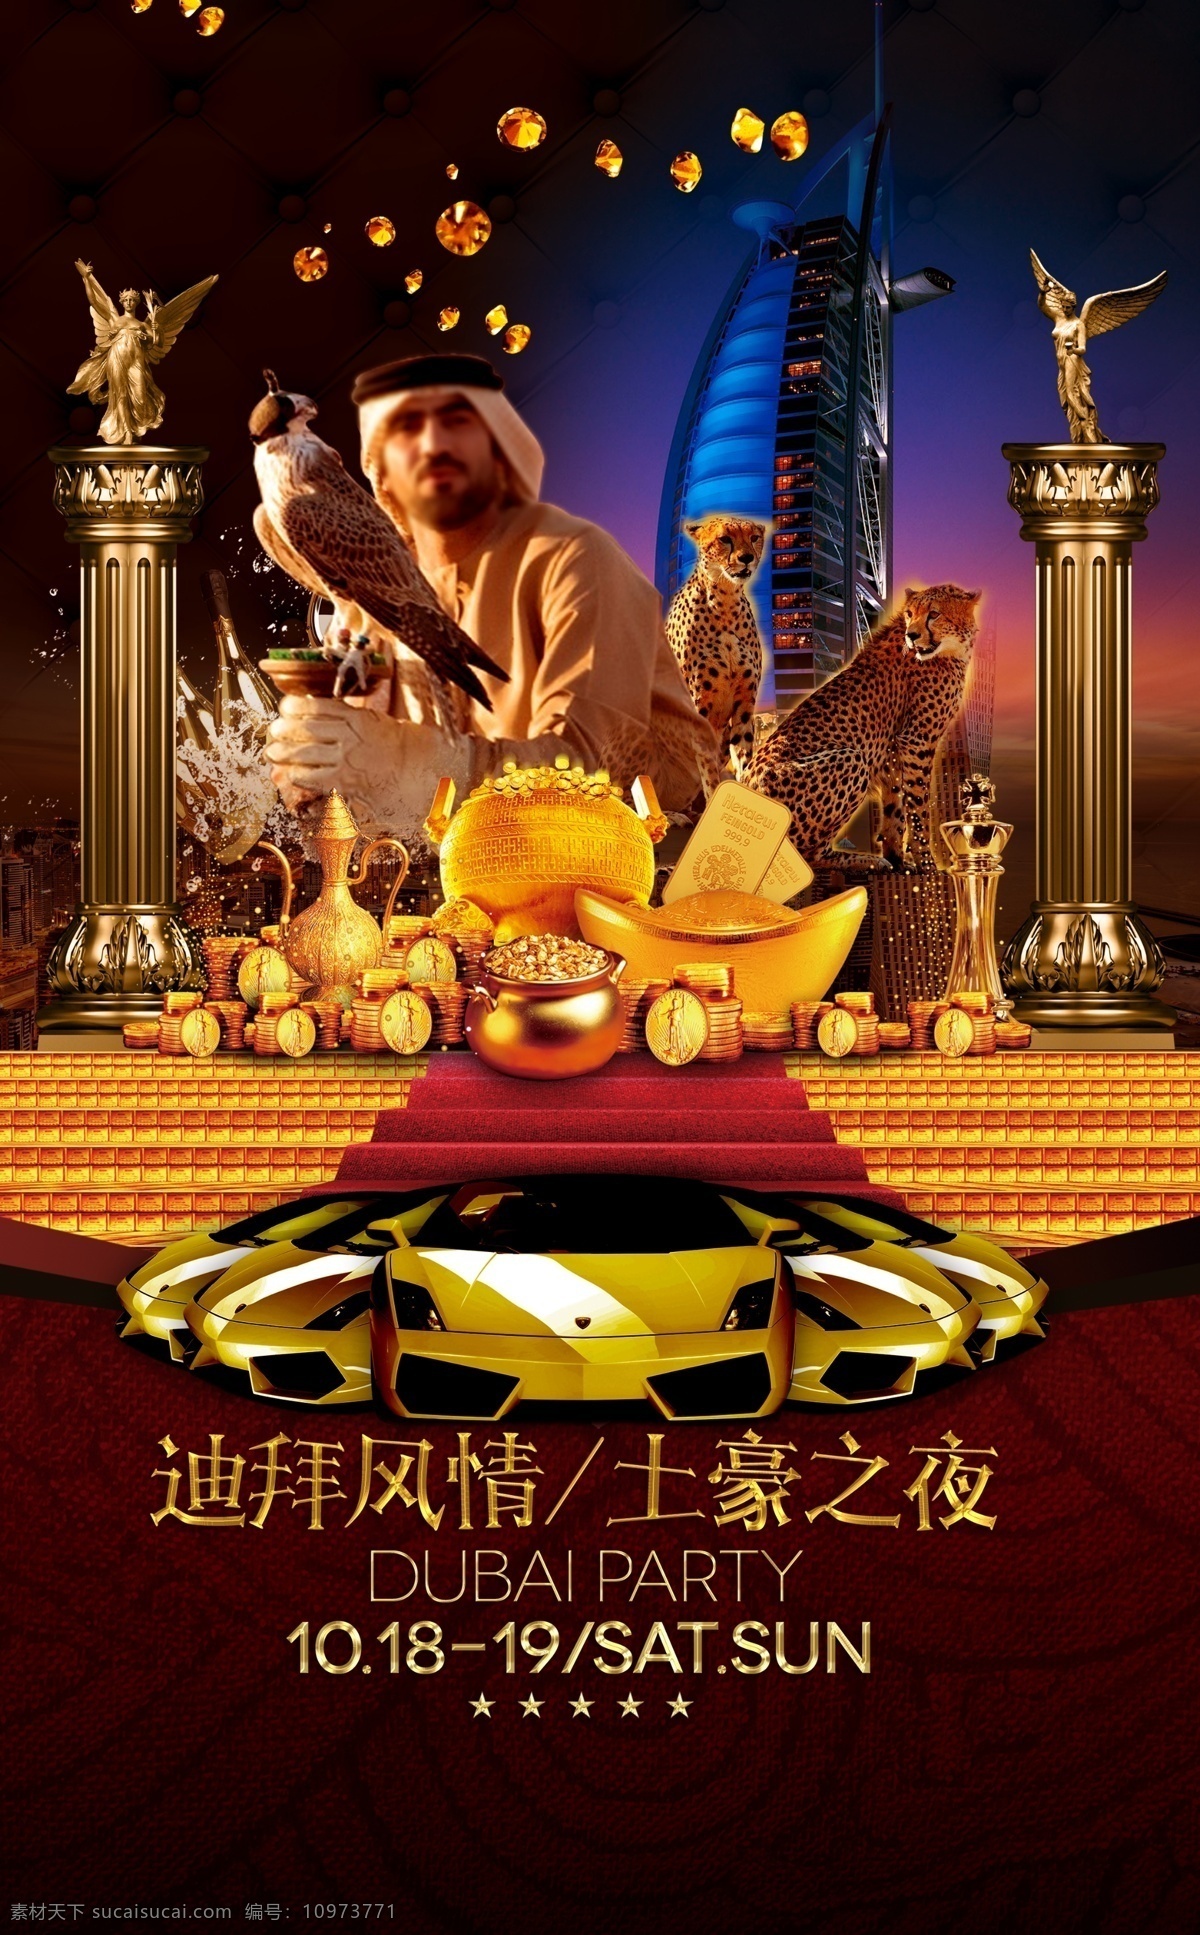 土豪 派对 迪拜 风情 黄金 帆船 酒吧 海报 阿拉伯 酒吧节日海报